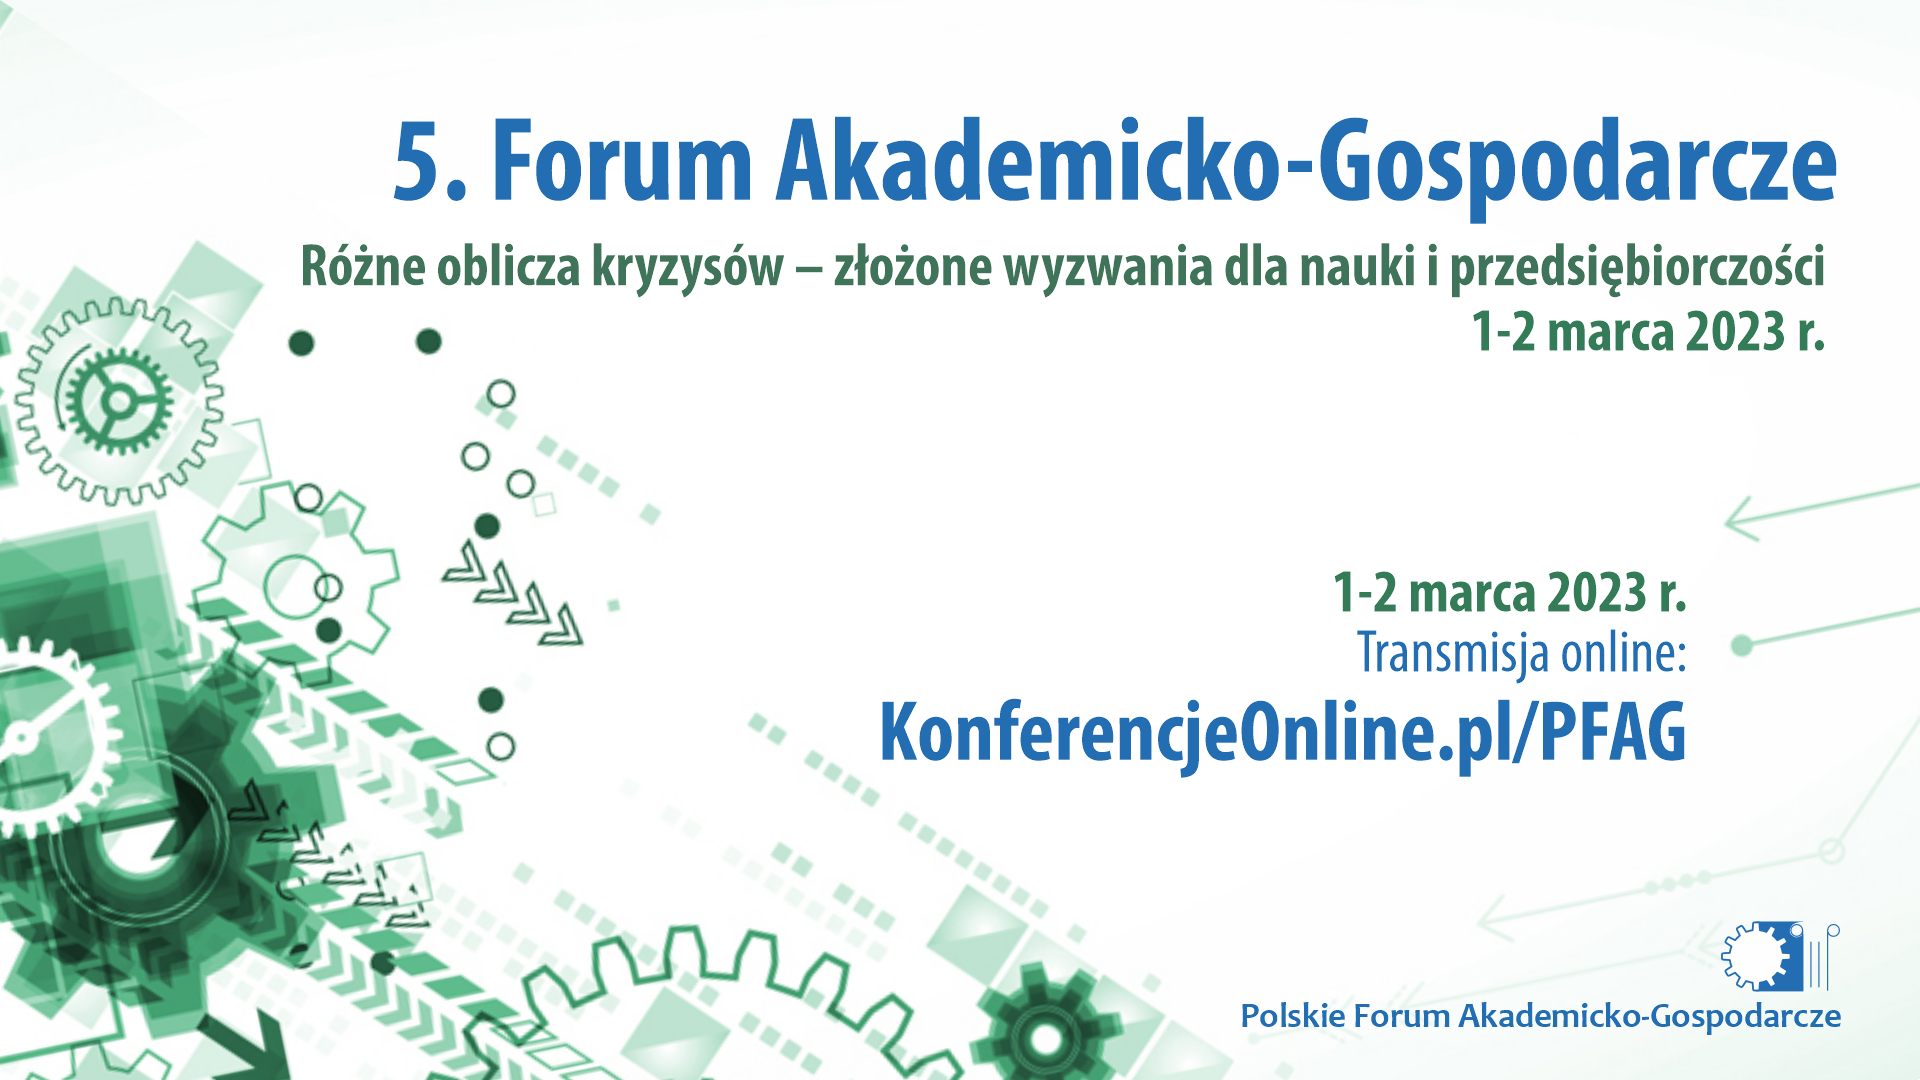 5. Forum Akademicko-Gospodarcze o różnych obliczach kryzysów oraz o wyzwaniach dla nauki i przedsiębiorczości